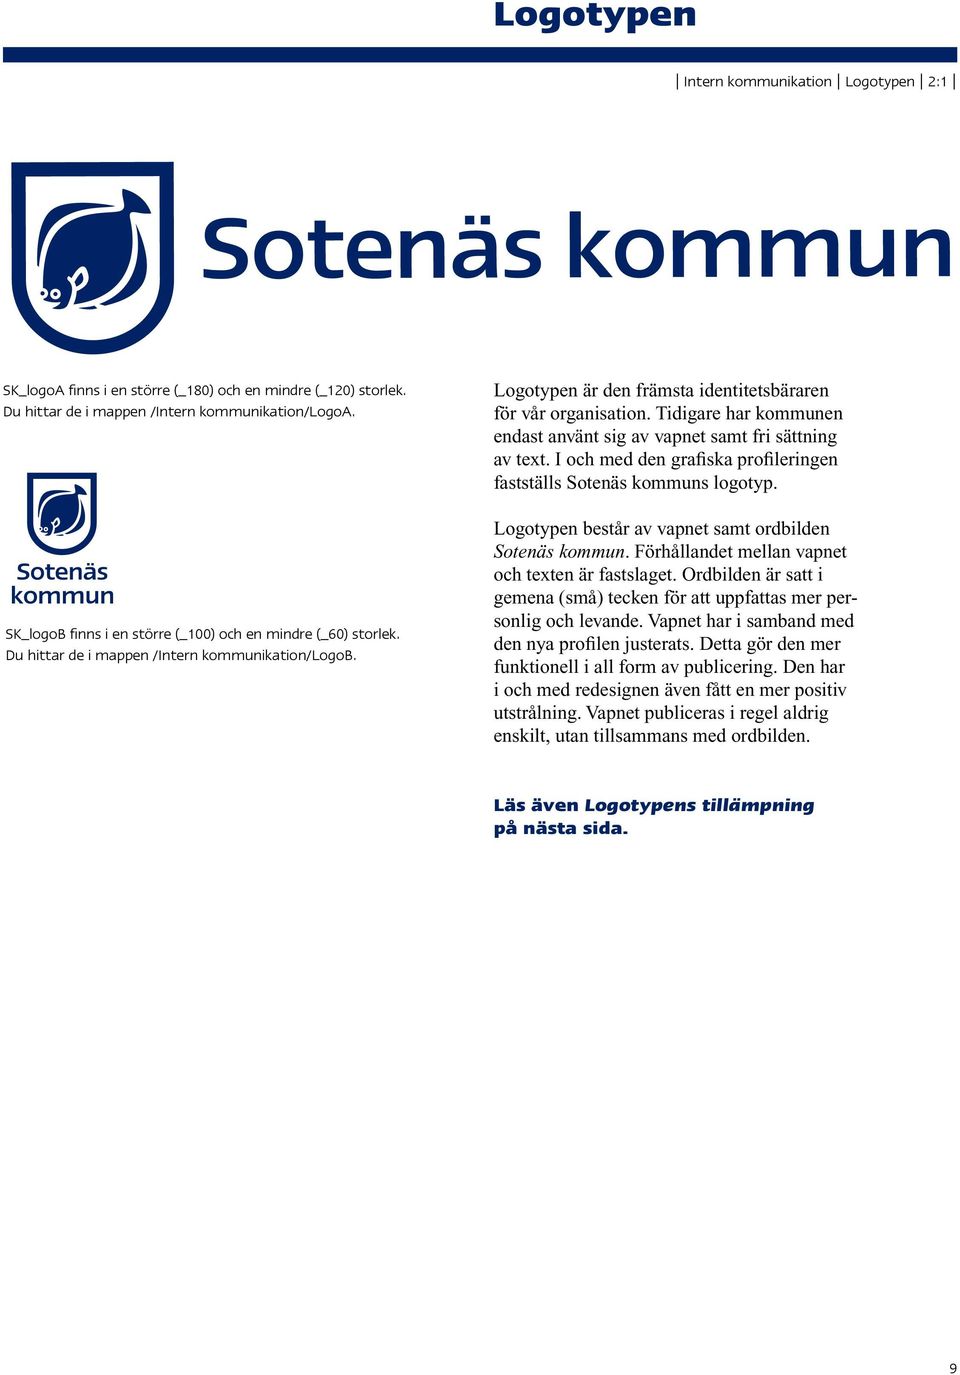 Tidigare har kommunen endast använt sig av vapnet samt fri sättning av text. I och med den grafiska profileringen fastställs Sotenäs kommuns logotyp.